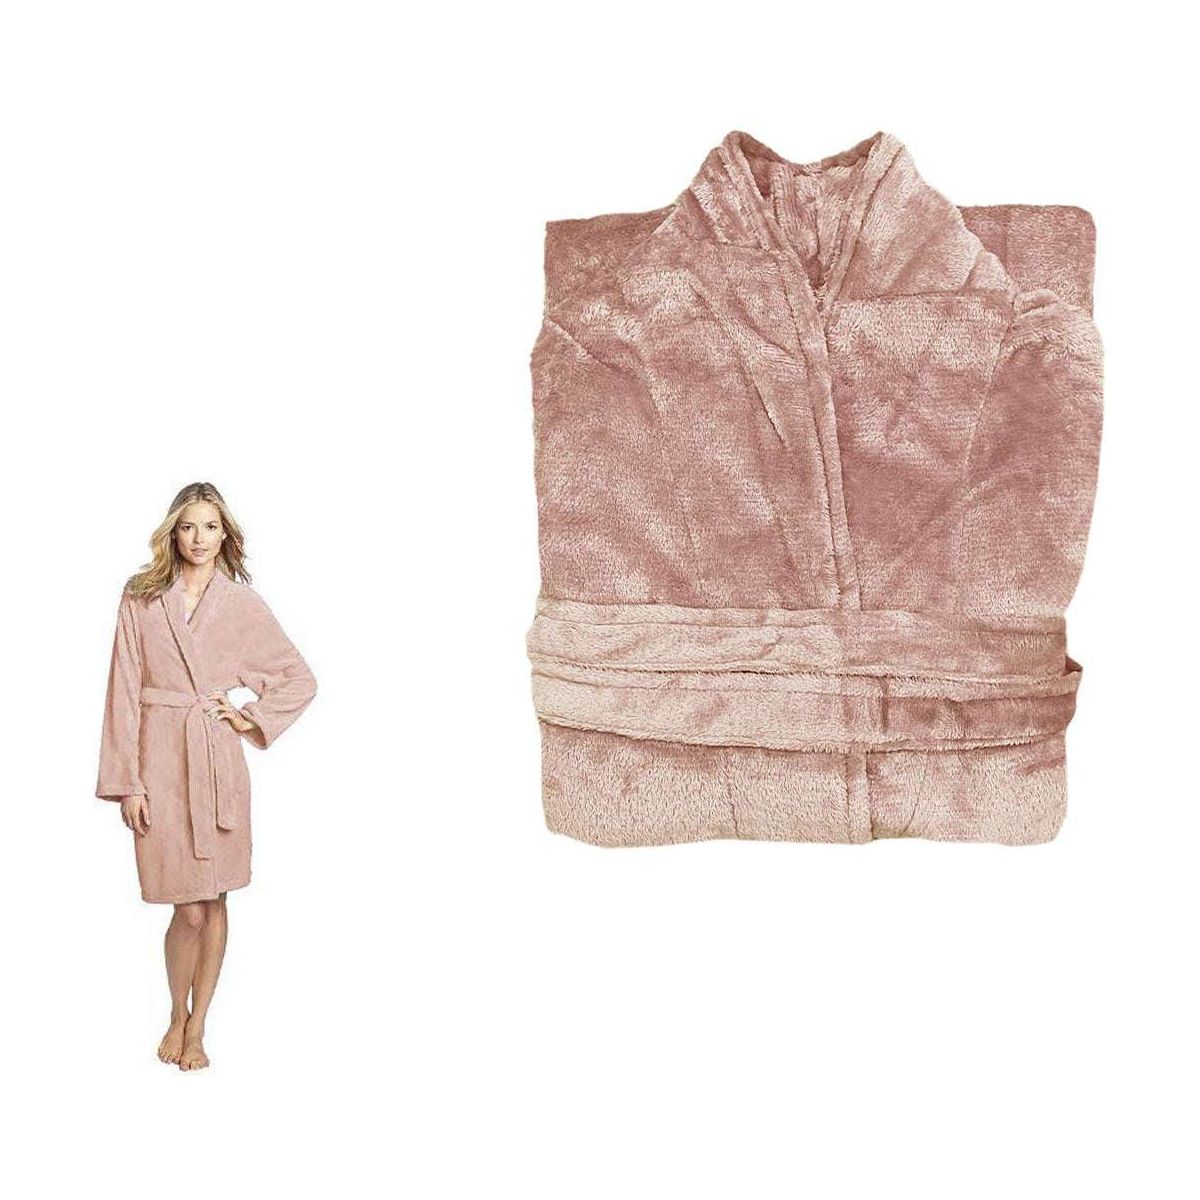 190GSM Ultra Soft Plush Fleece Bath Robe Dusty Rose XL - Magdasmall